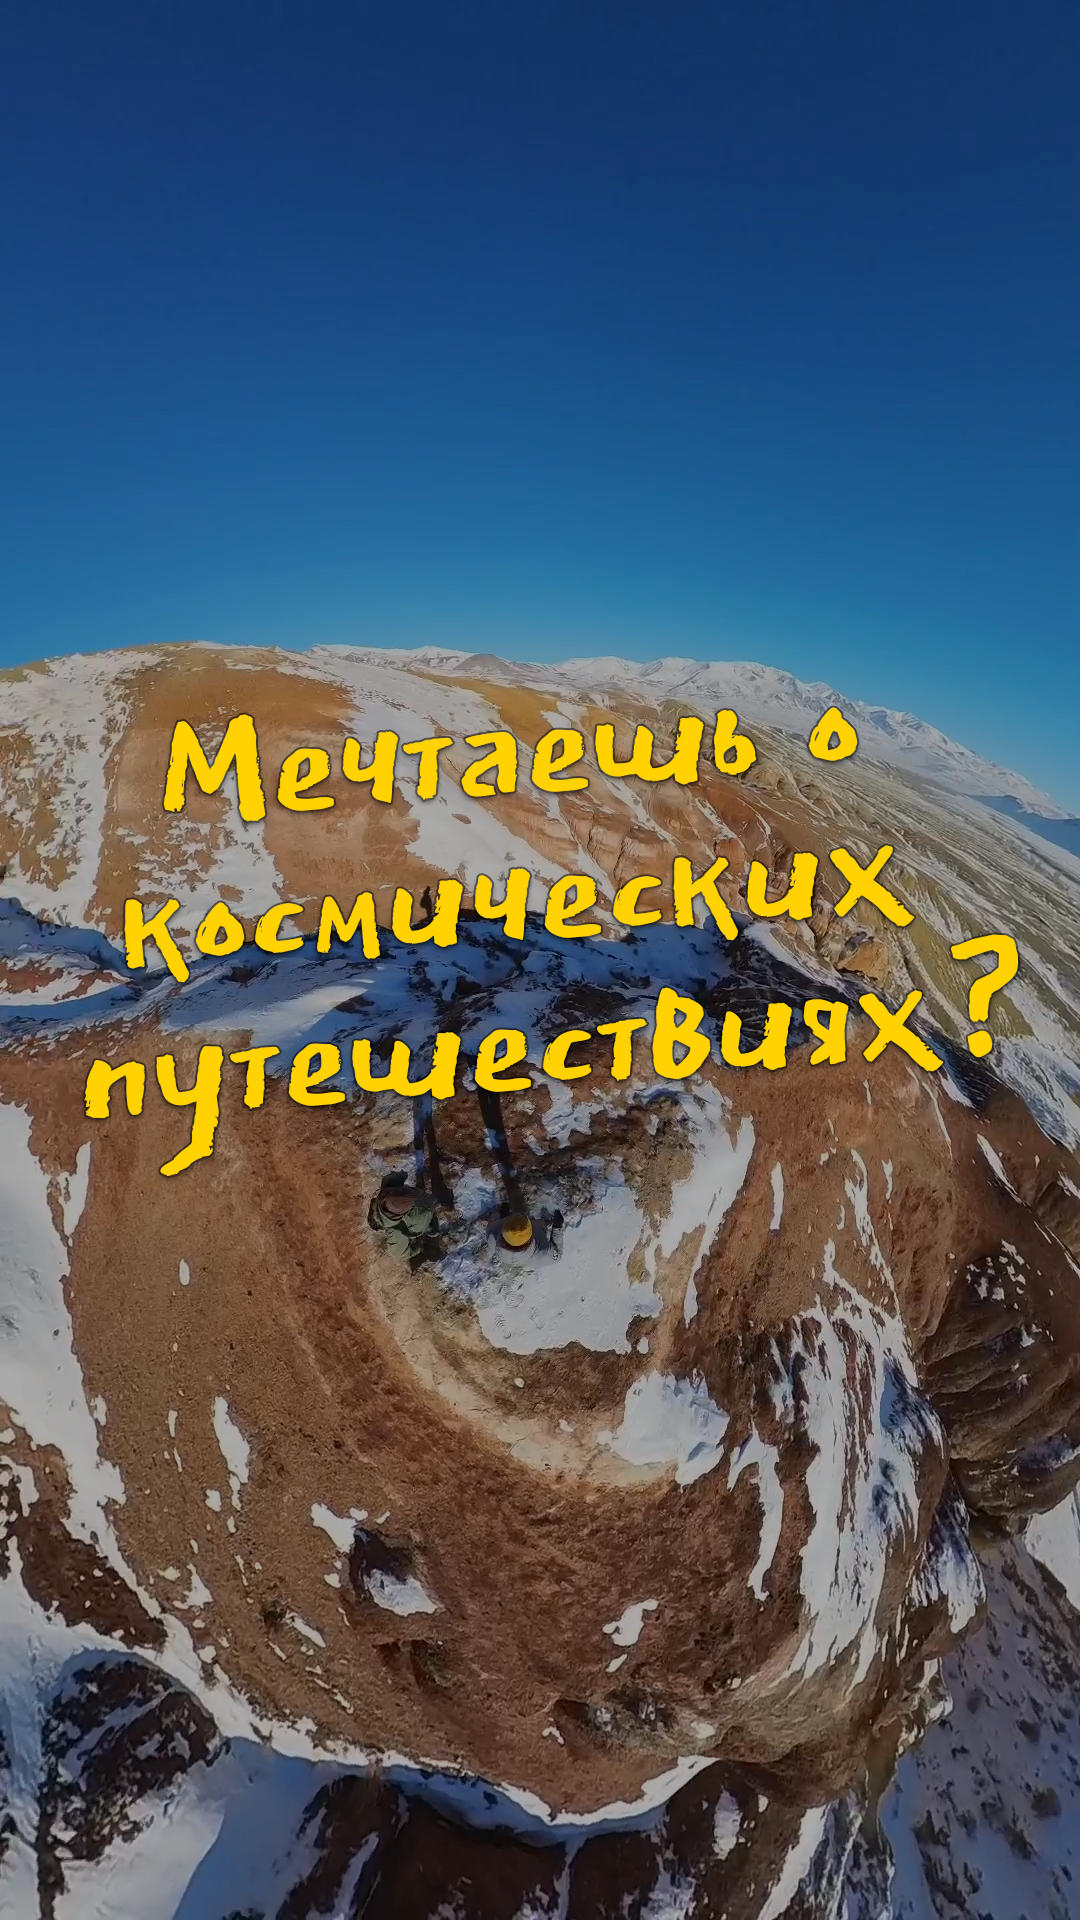 Как побывать на марсе и без трат в миллионы? #Космос #Марс #Путешествия #Алтай #РеспубликаАлтай